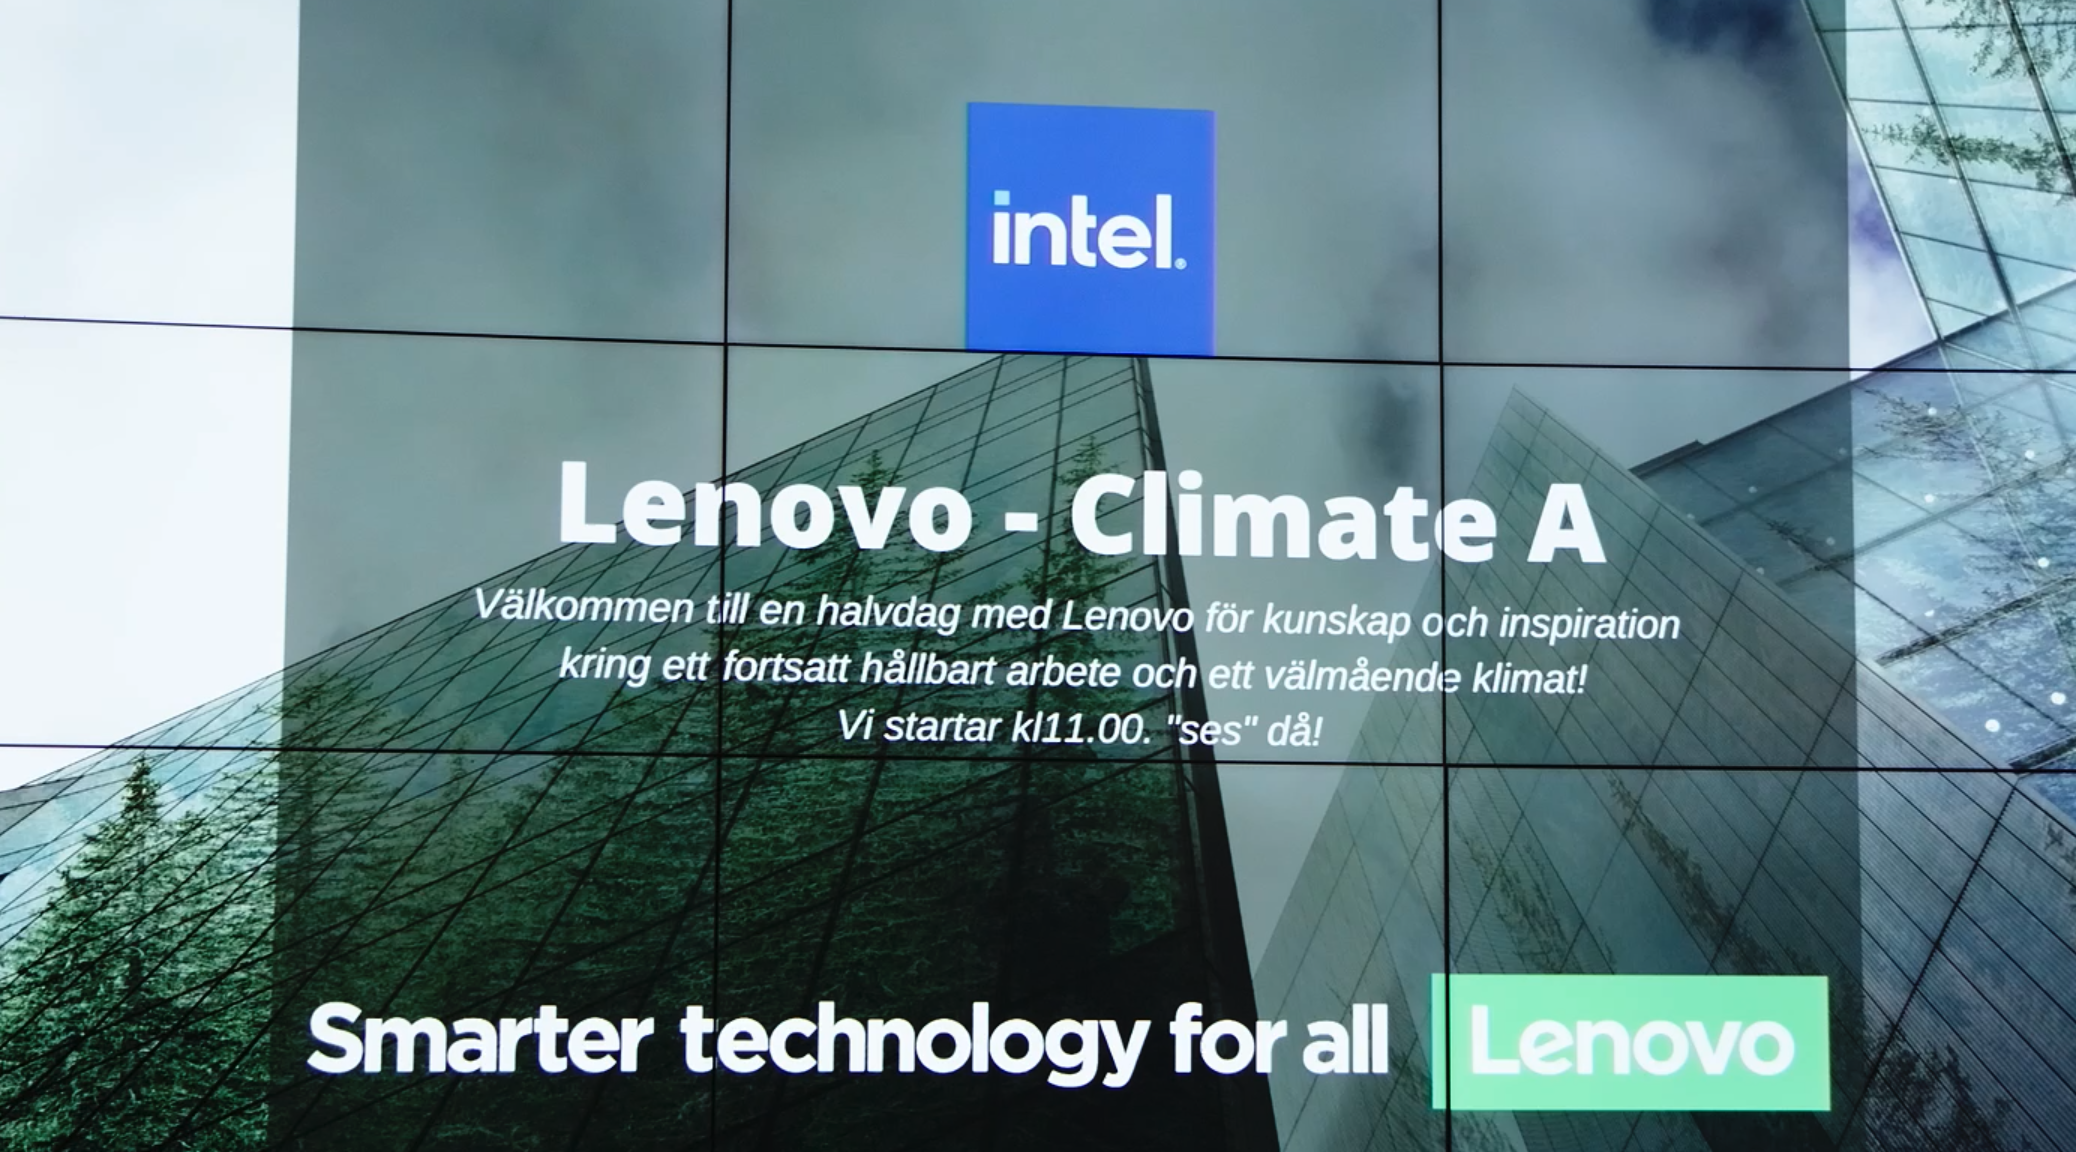 Inspireras av Lenovo och nå snabbare omställning genom att integrera hållbarhetsarbetet i hela värdekedjan!